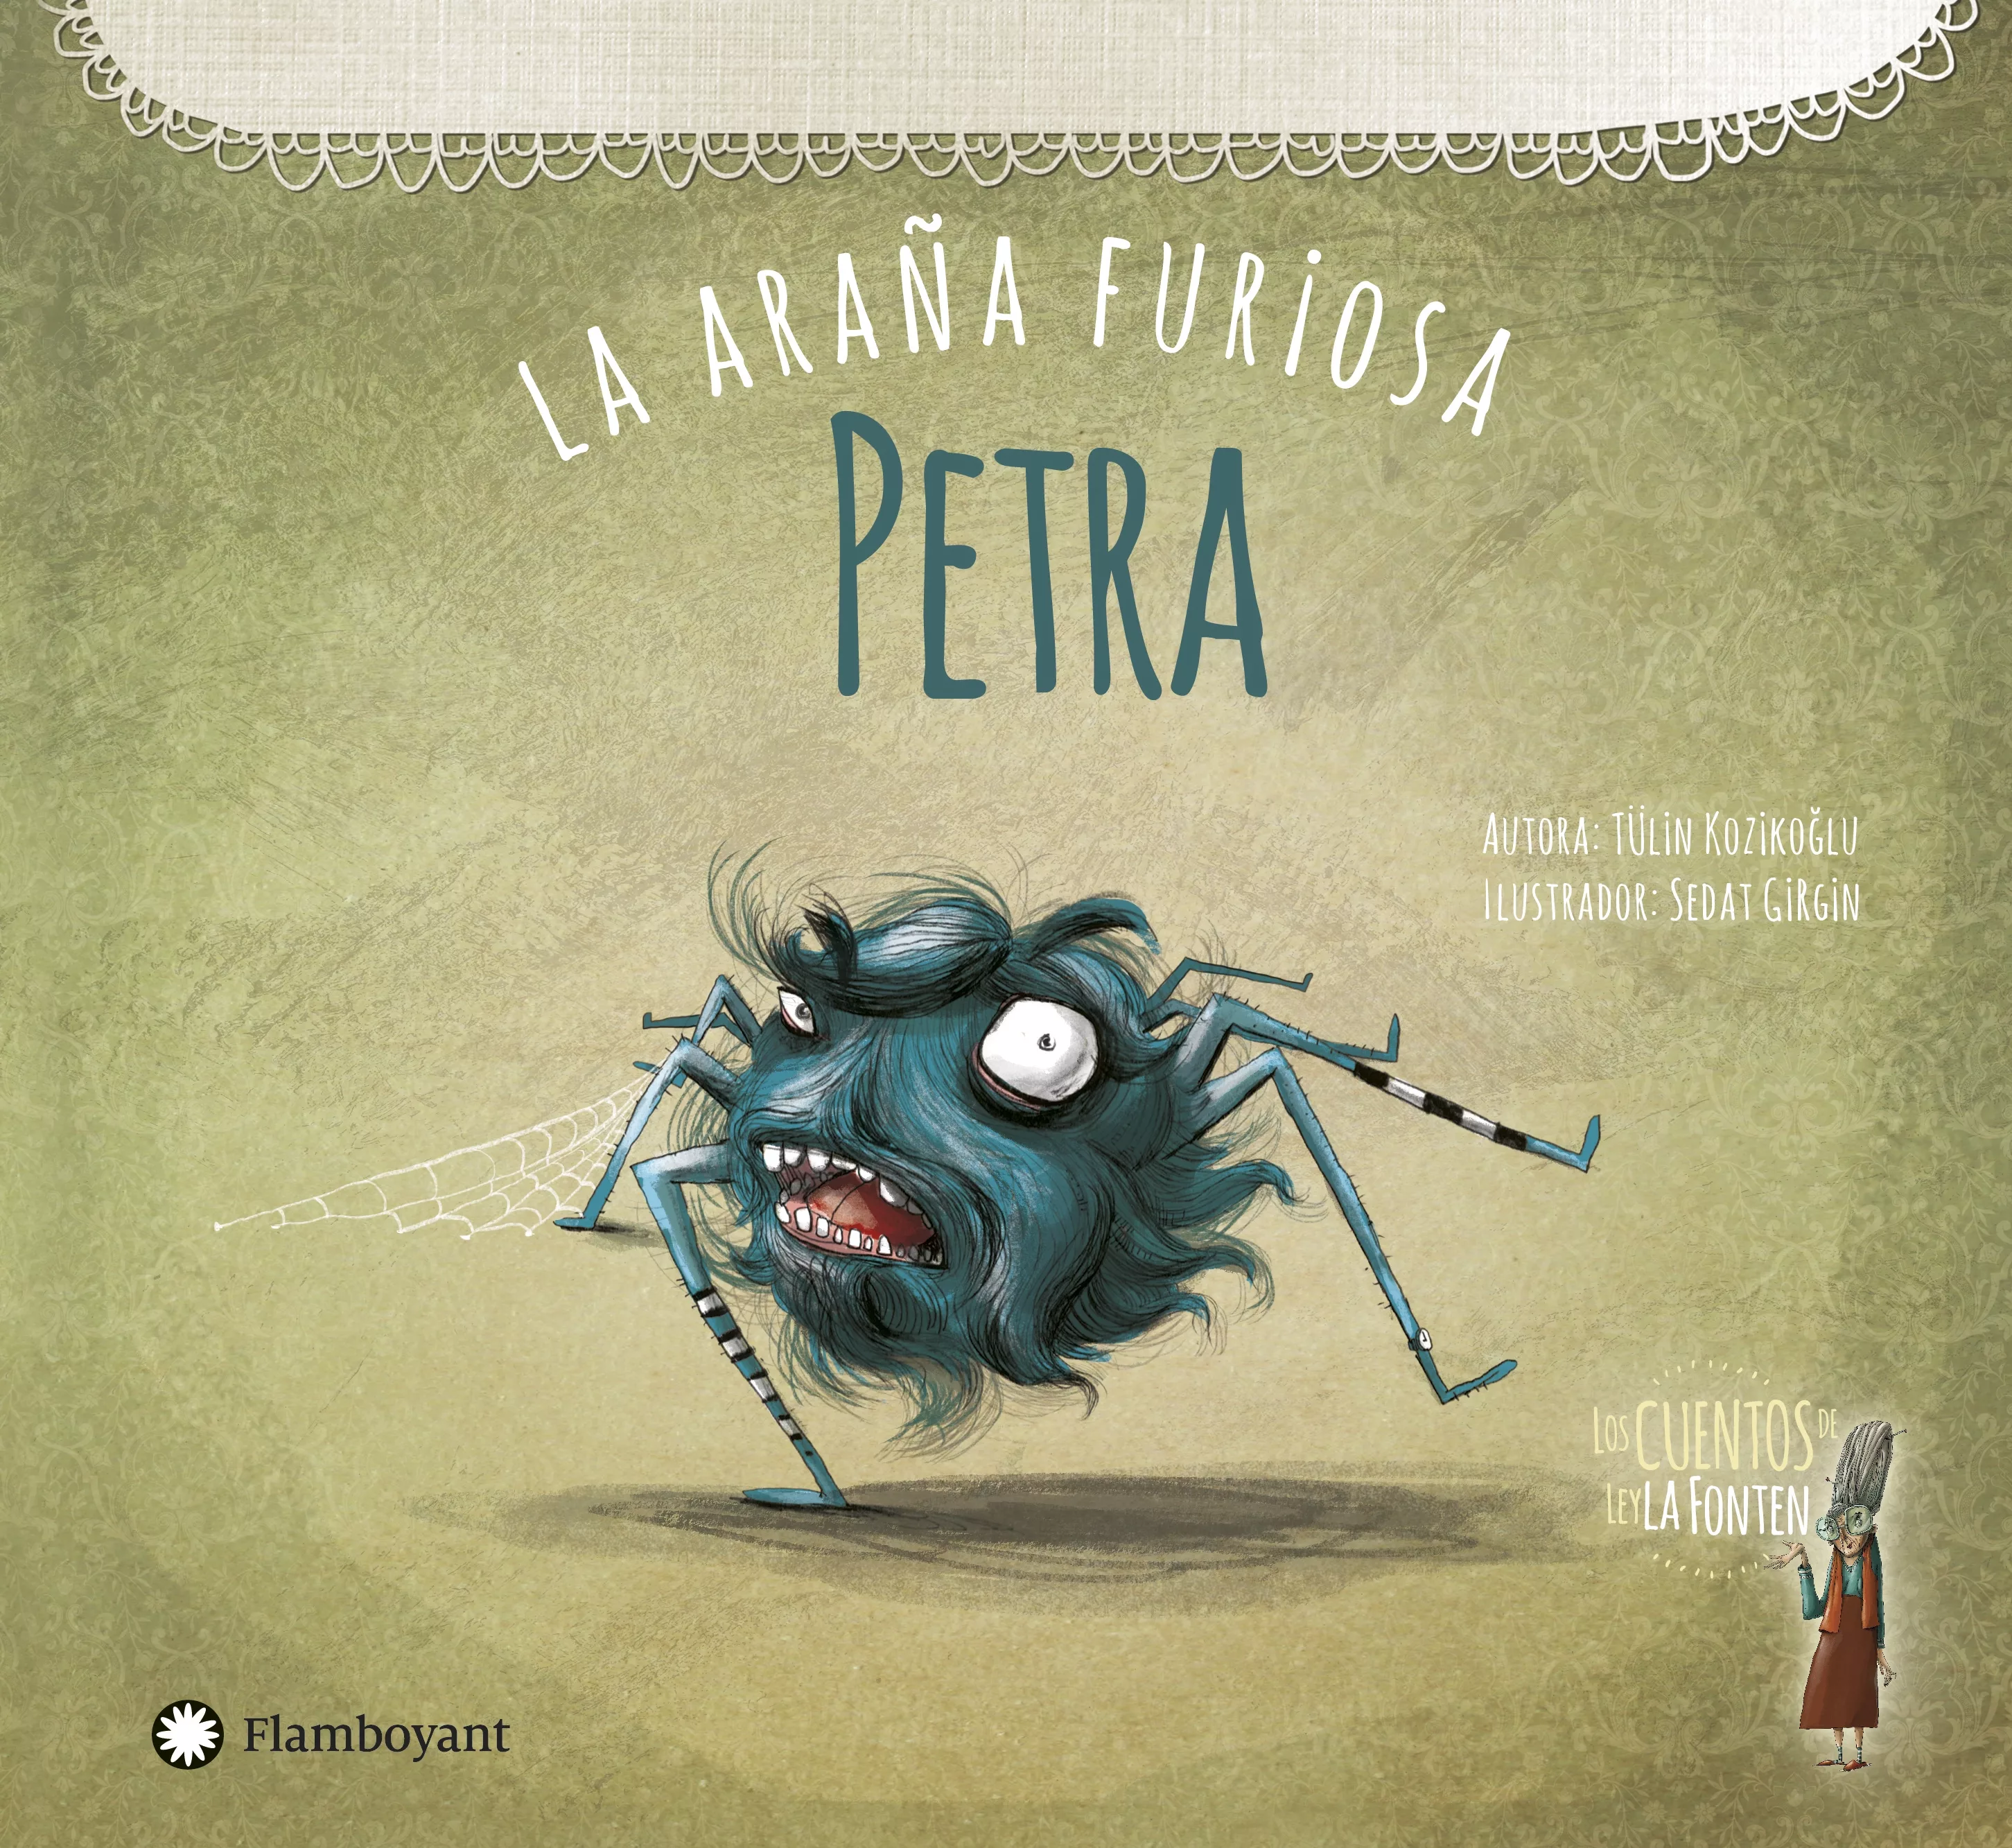 Cover of Petra, la araña furiosa